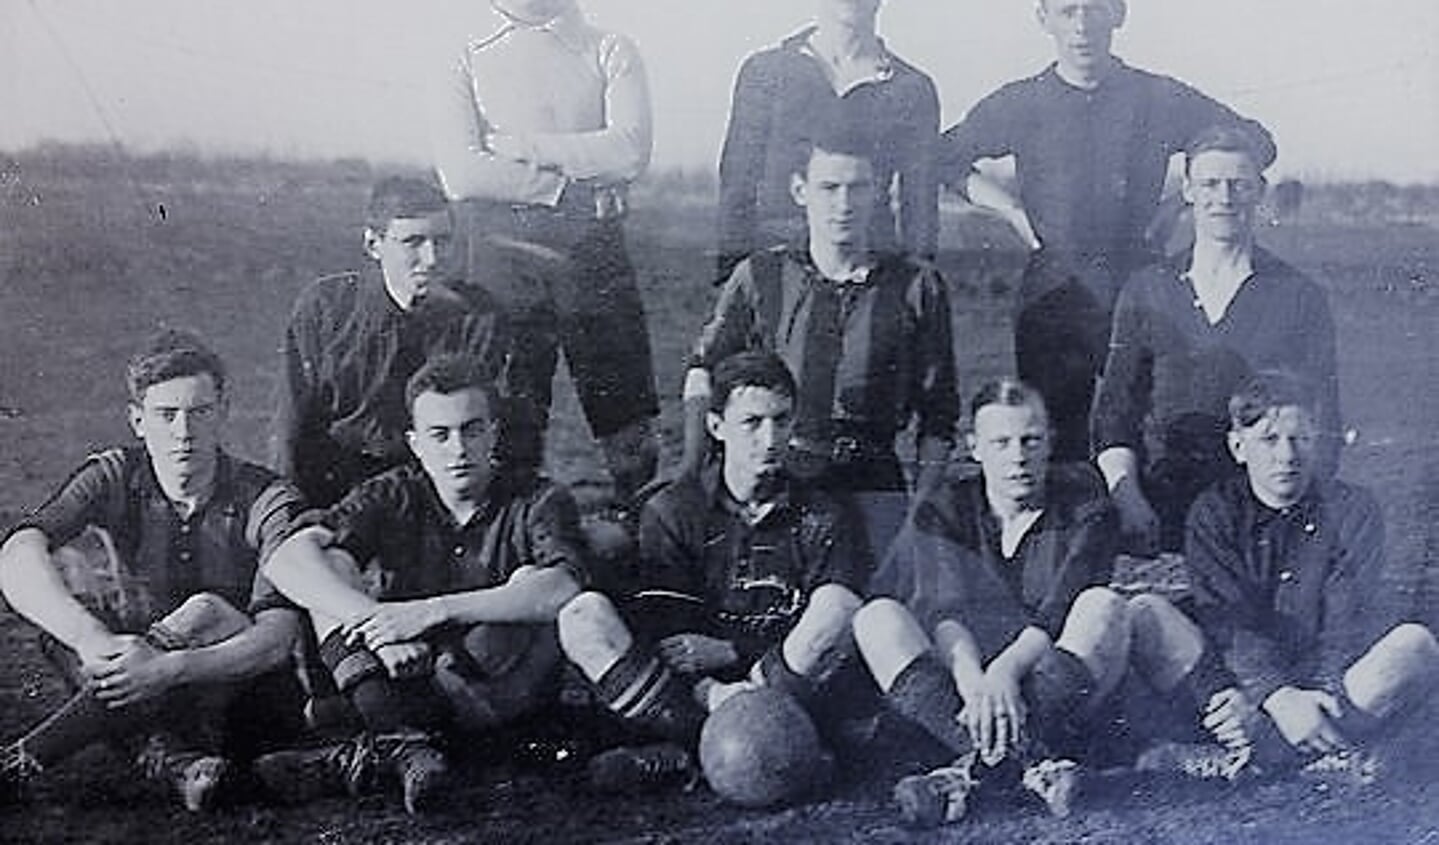 Het kampioensteam van 1920-1921.